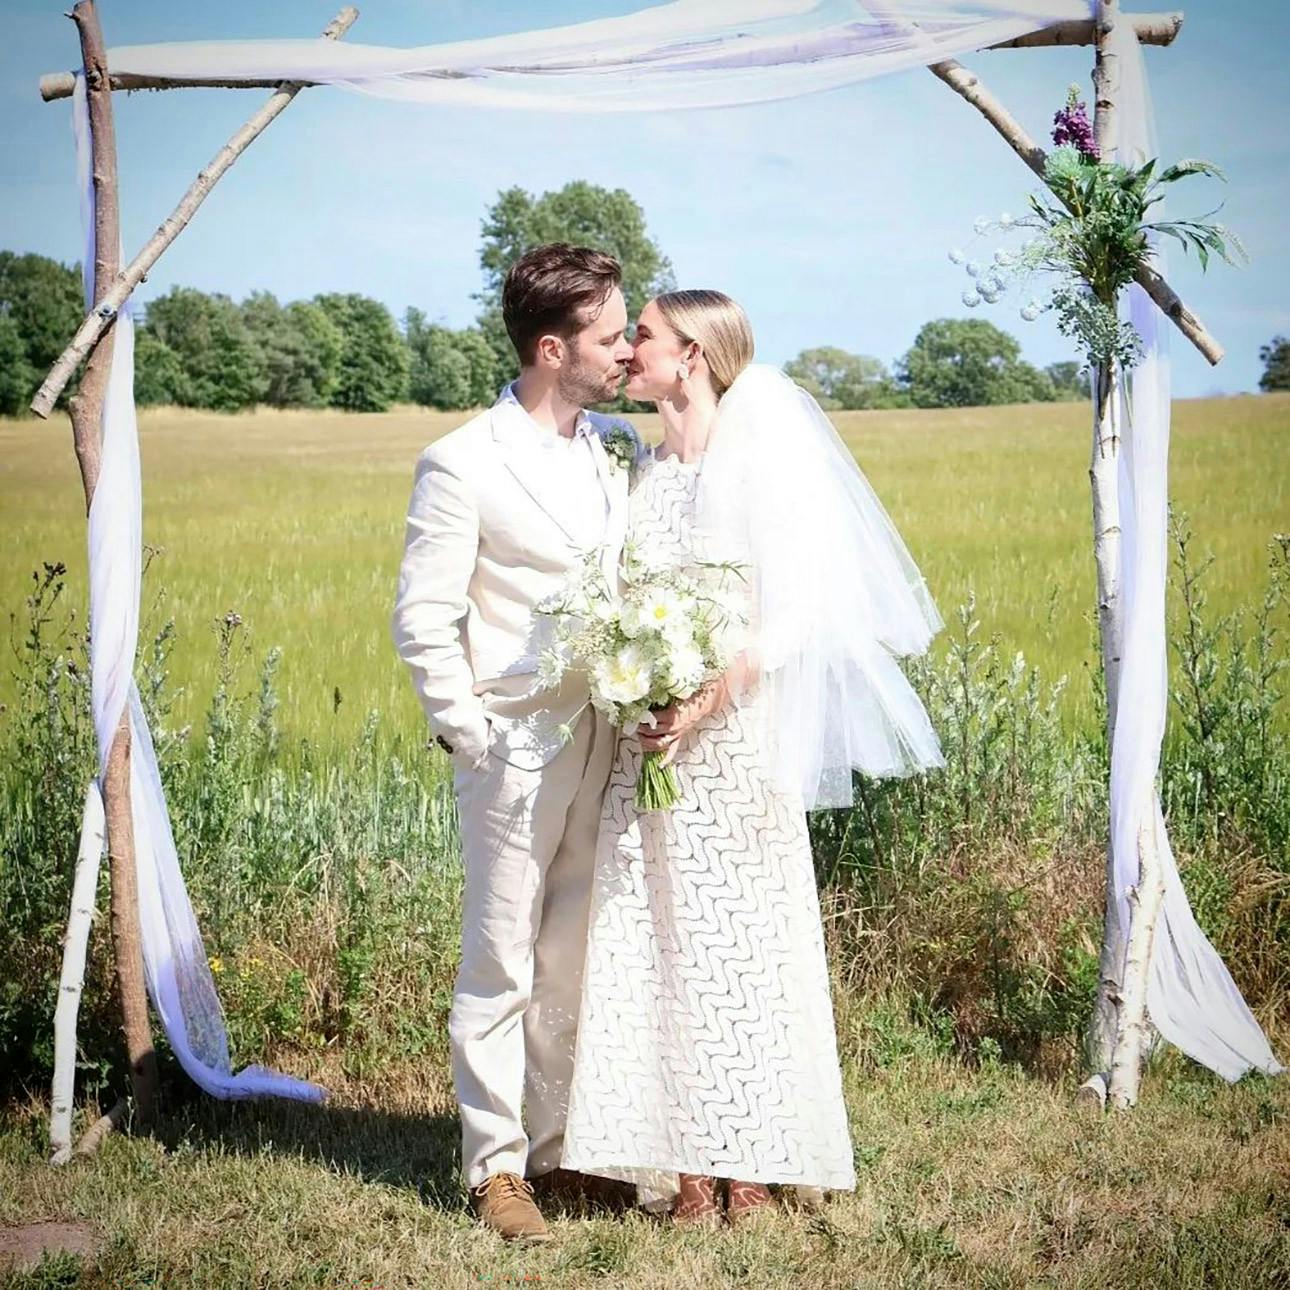 Med grønne marker som bagtæppe blev skuespillerparret Jens Sætter-Lassen, 38, og Neel Rønholt gift i juni sidste år.